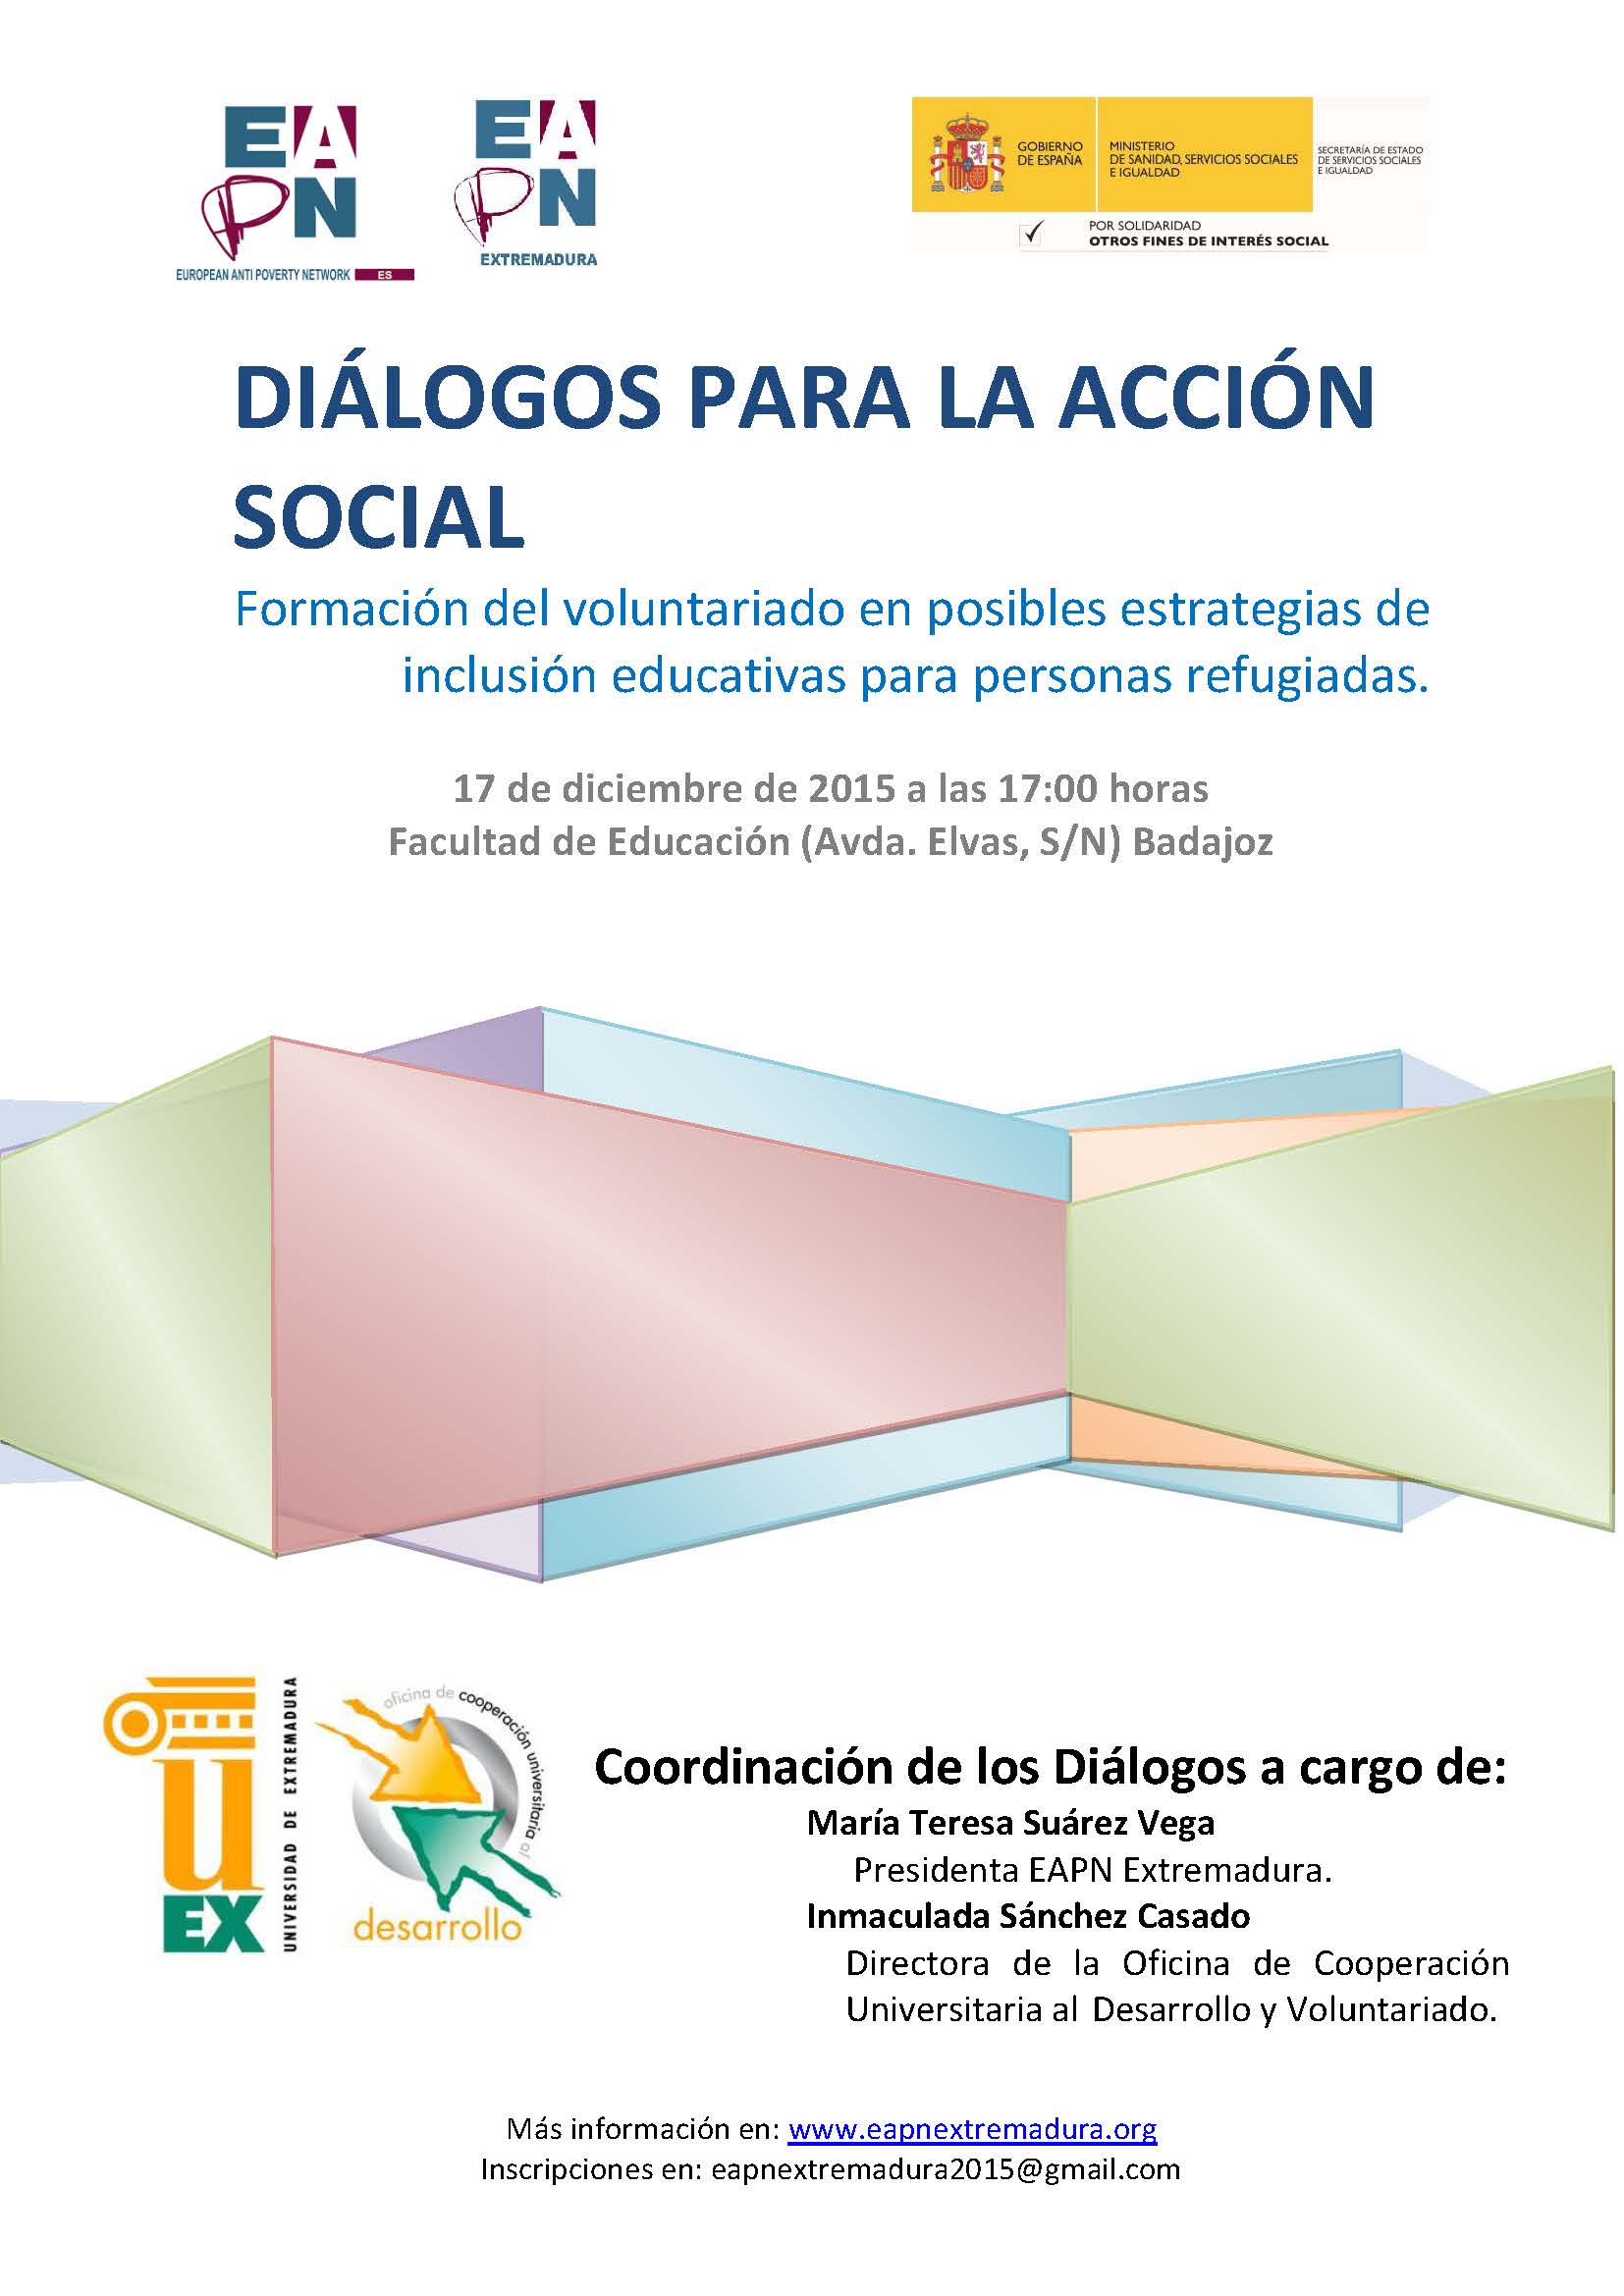 Diálogos para la Acción Social: “Formación del voluntariado en posibles estrategias de inclusión educativas para personas refugiadas”.